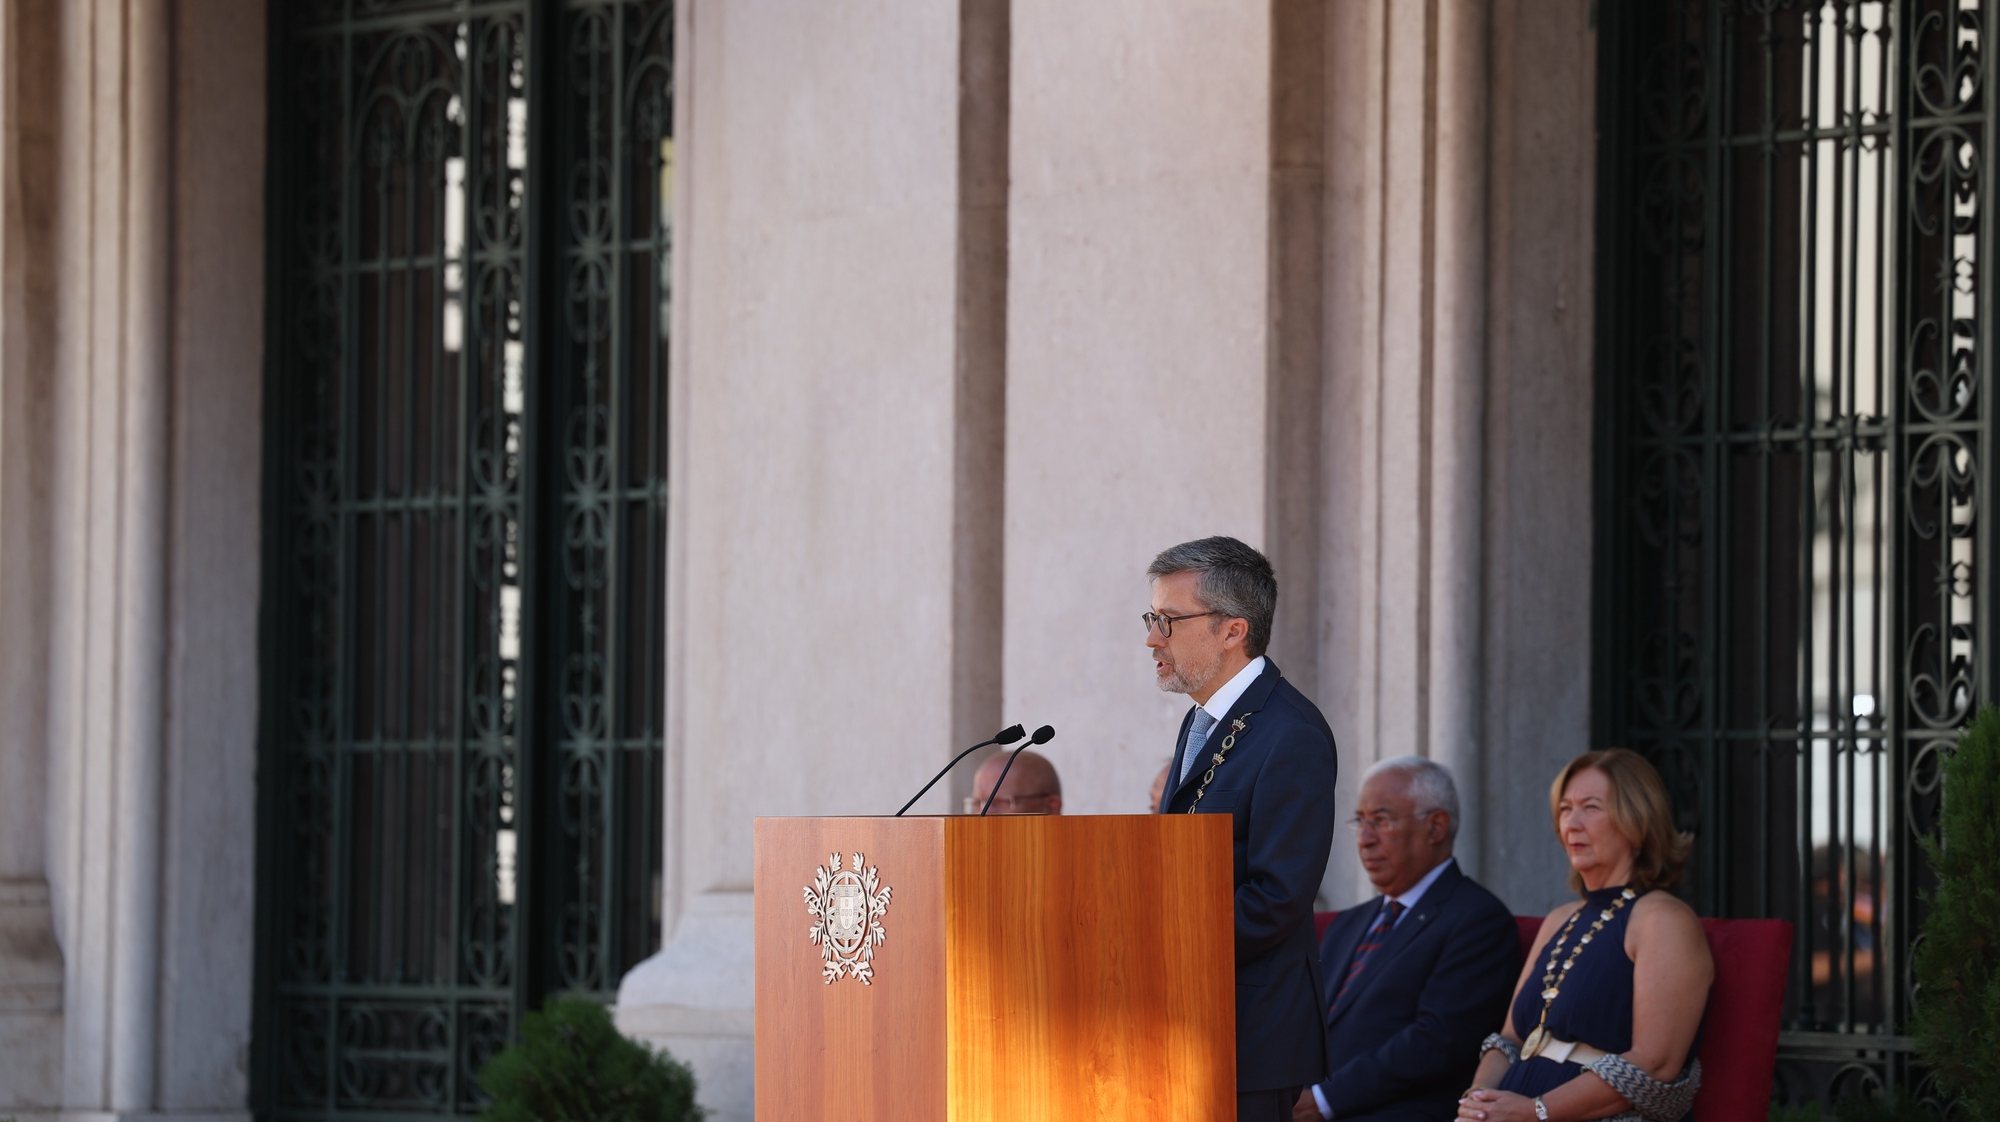 U presidente da Câmara Municipal de Lisboa Carlos Moedas discursa durante a cerimónia comemorativa do 113º  aniversário da Implantação da República Portuguesa, na Câmara Municipal de Lisboa, 5 de outubro de 2923. TIAGO PETINGA/LUSA